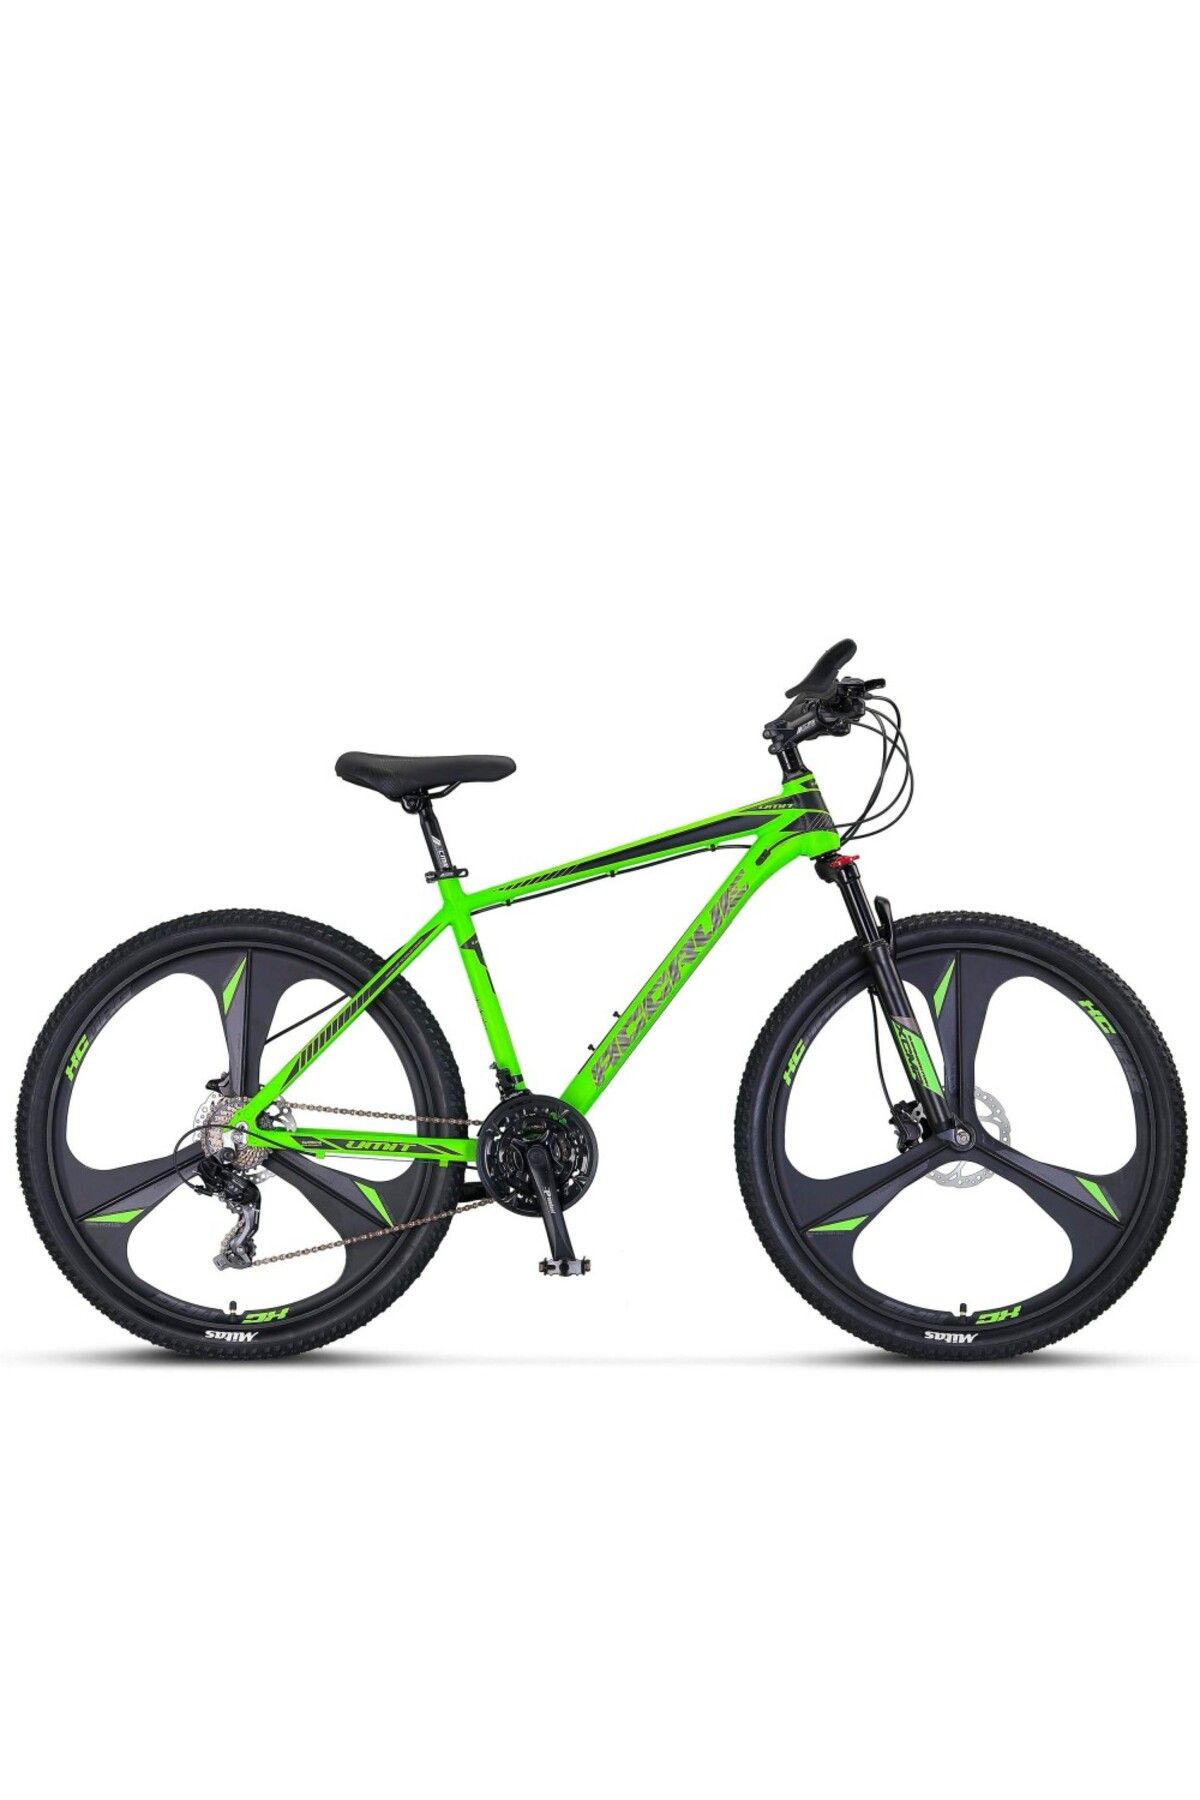 Ümit 2656 Accrue 2d 26 Jant 21 Vites Bisiklet Neon Yeşil